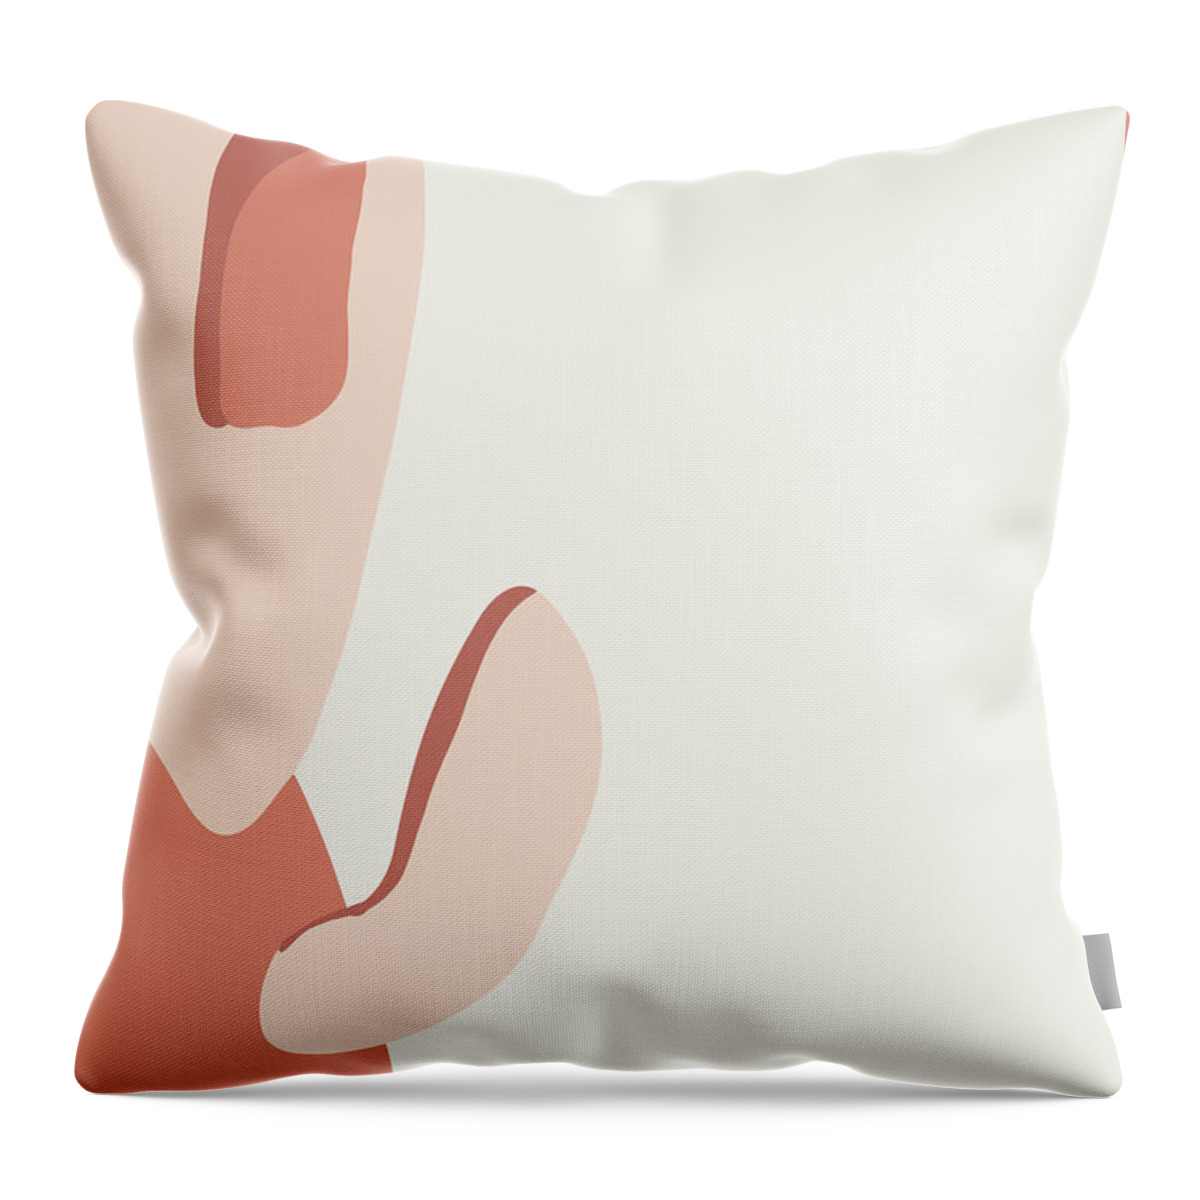 Desert Throw Pillow featuring the digital art Desert Cactus III by Ink Well